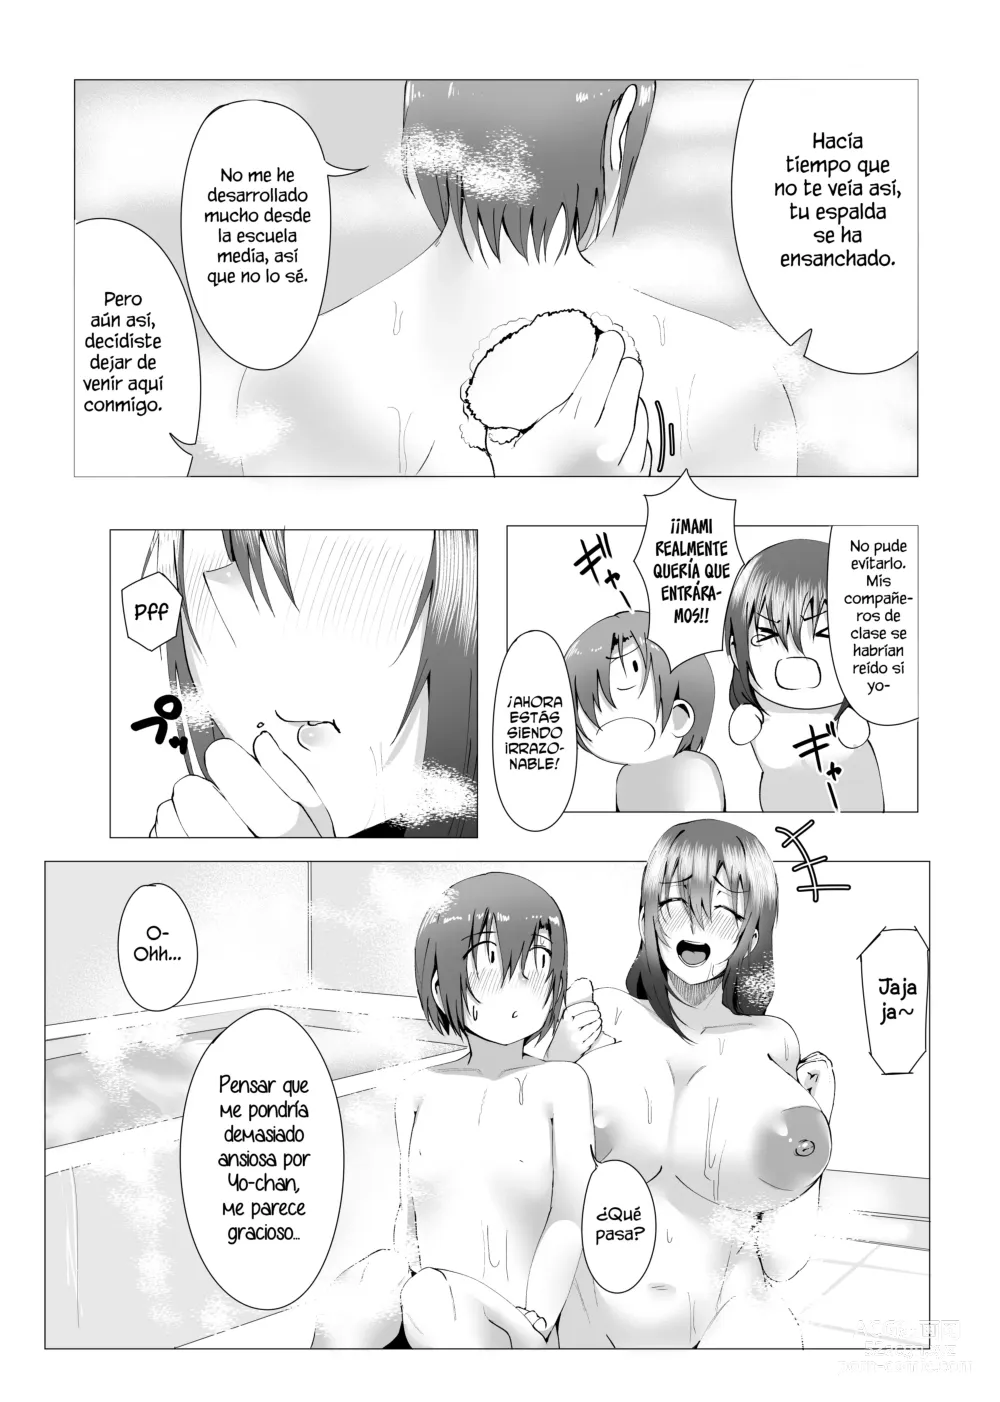 Page 27 of doujinshi ¿Estas bien con mami?